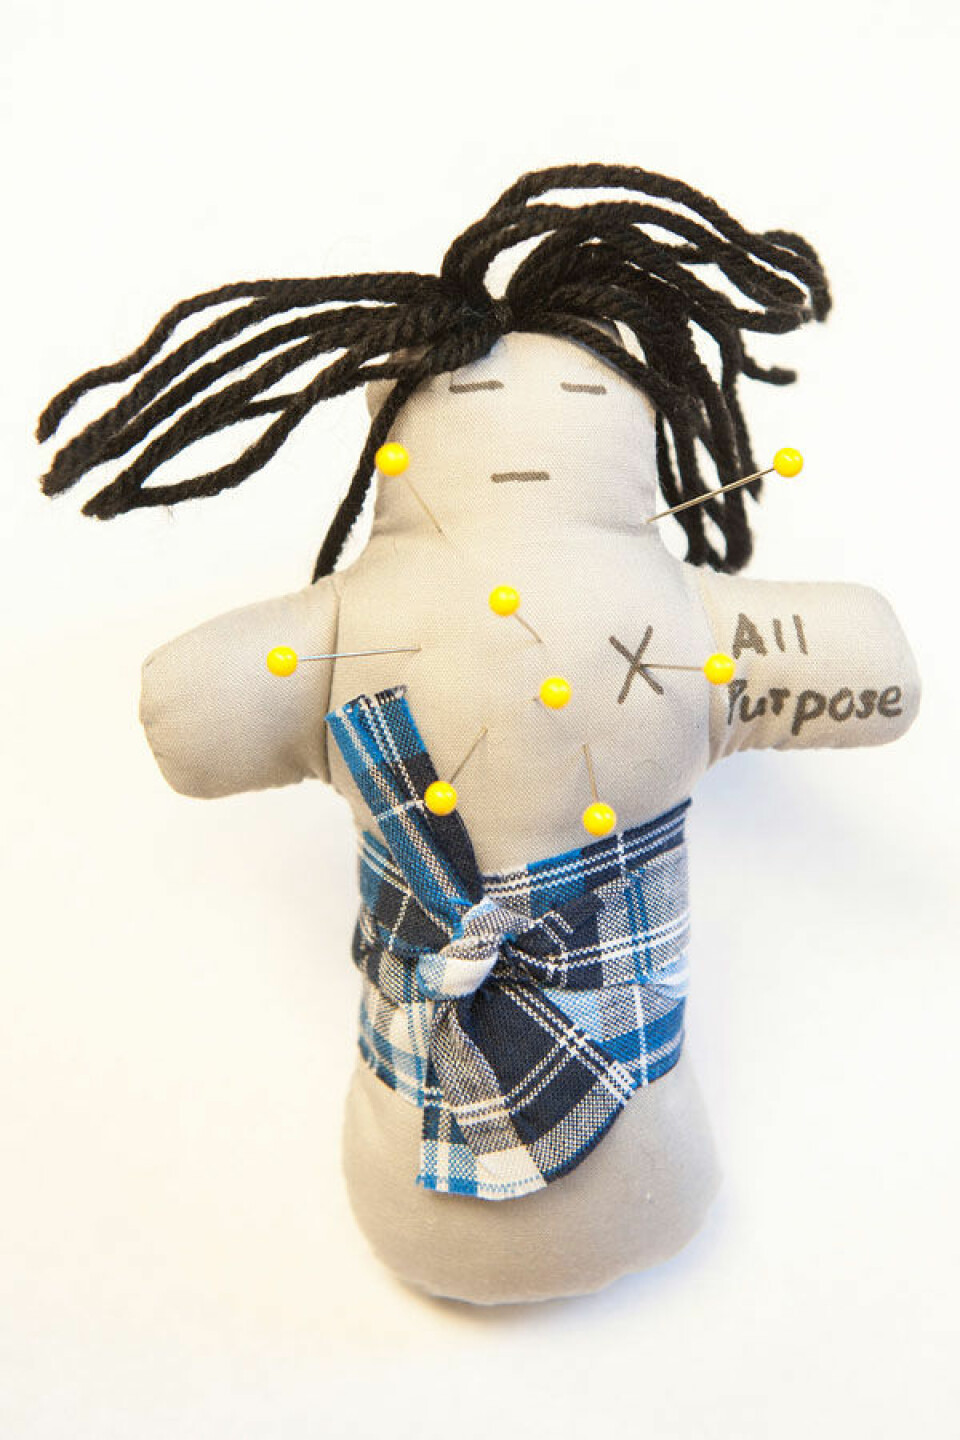 En av voodoo-dukkene som ble brukt i eksperimentet. Dukka representerer ektefellen til en av deltagerne i forsøket. (Foto: Jo McCulty, Ohio State University)